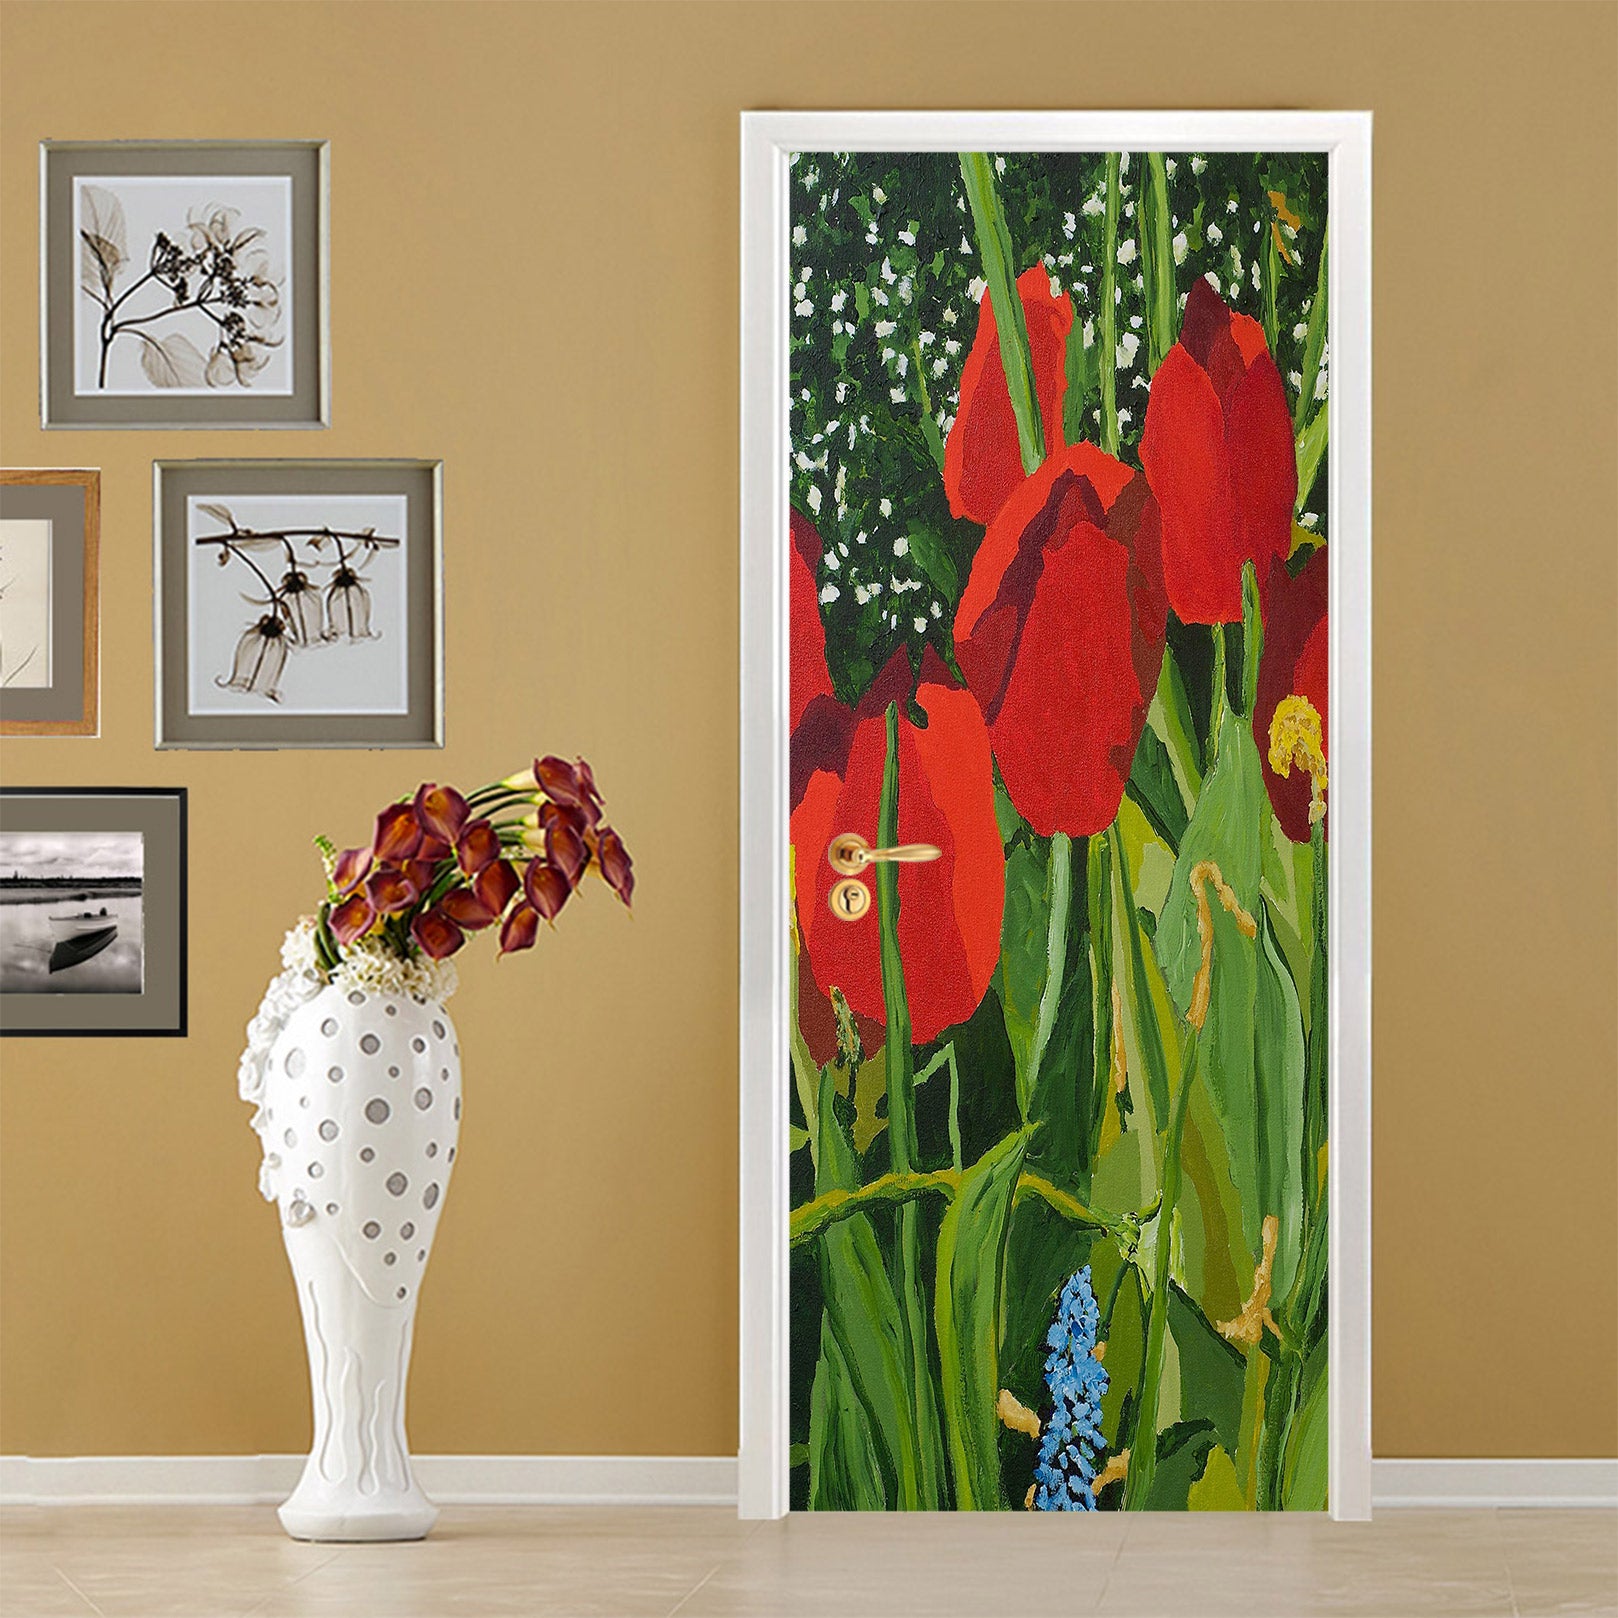 3D Red Tulips 9364 Allan P. Friedlander Door Mural